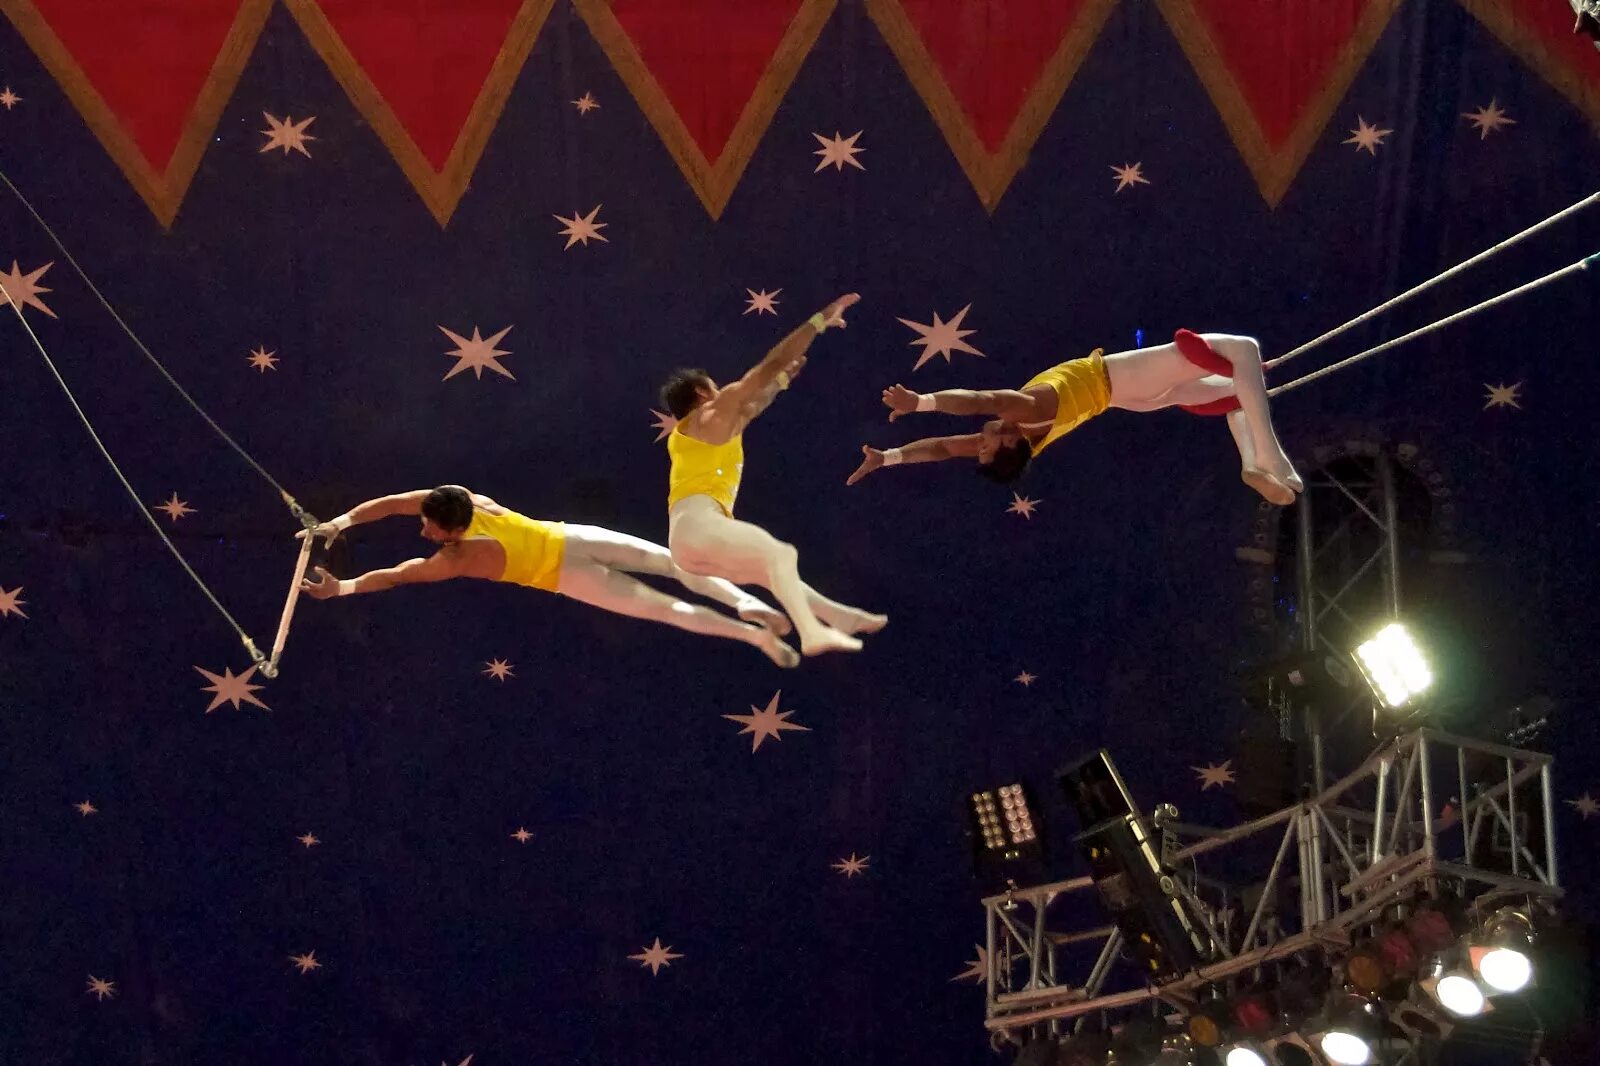 Цирк Trapeze artists. Цирк дю солей воздушные гимнасты. Гимнасты в цирке. Акробаты в цирке. Гимнасты акробаты